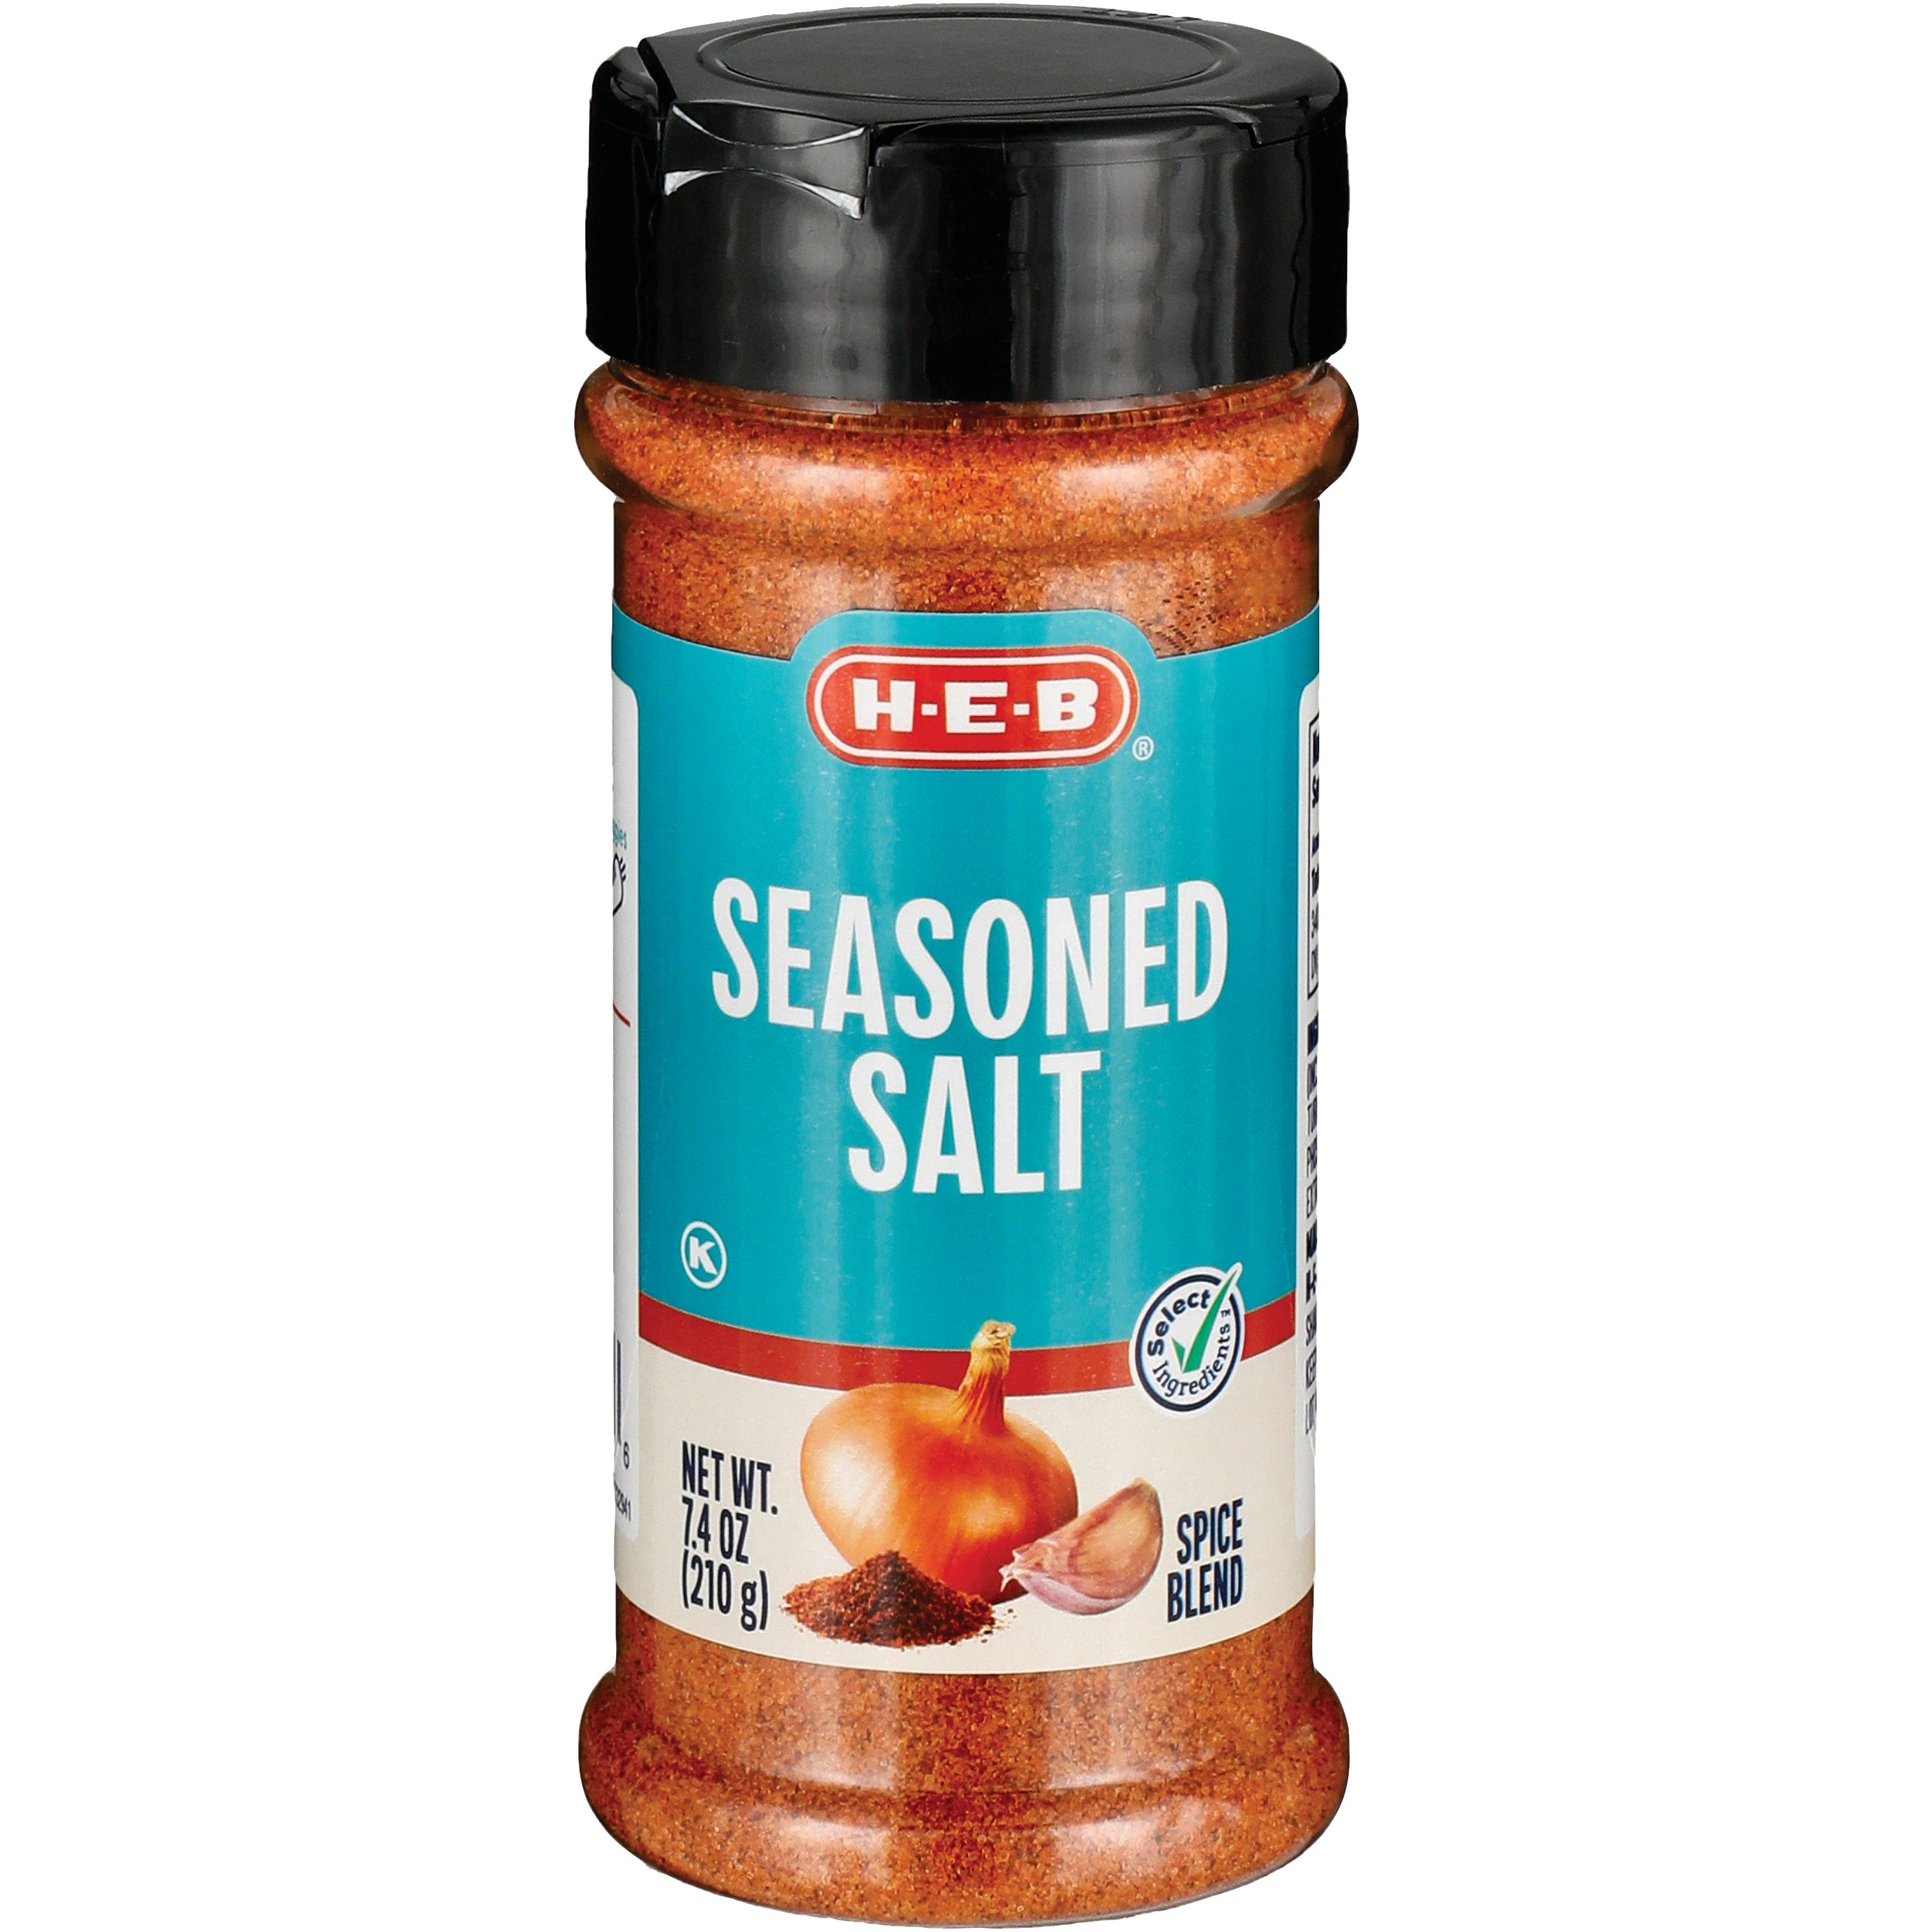 Old Bay 30% Less Sodium Seasoning - Shop Spice Mixes at H-E-B